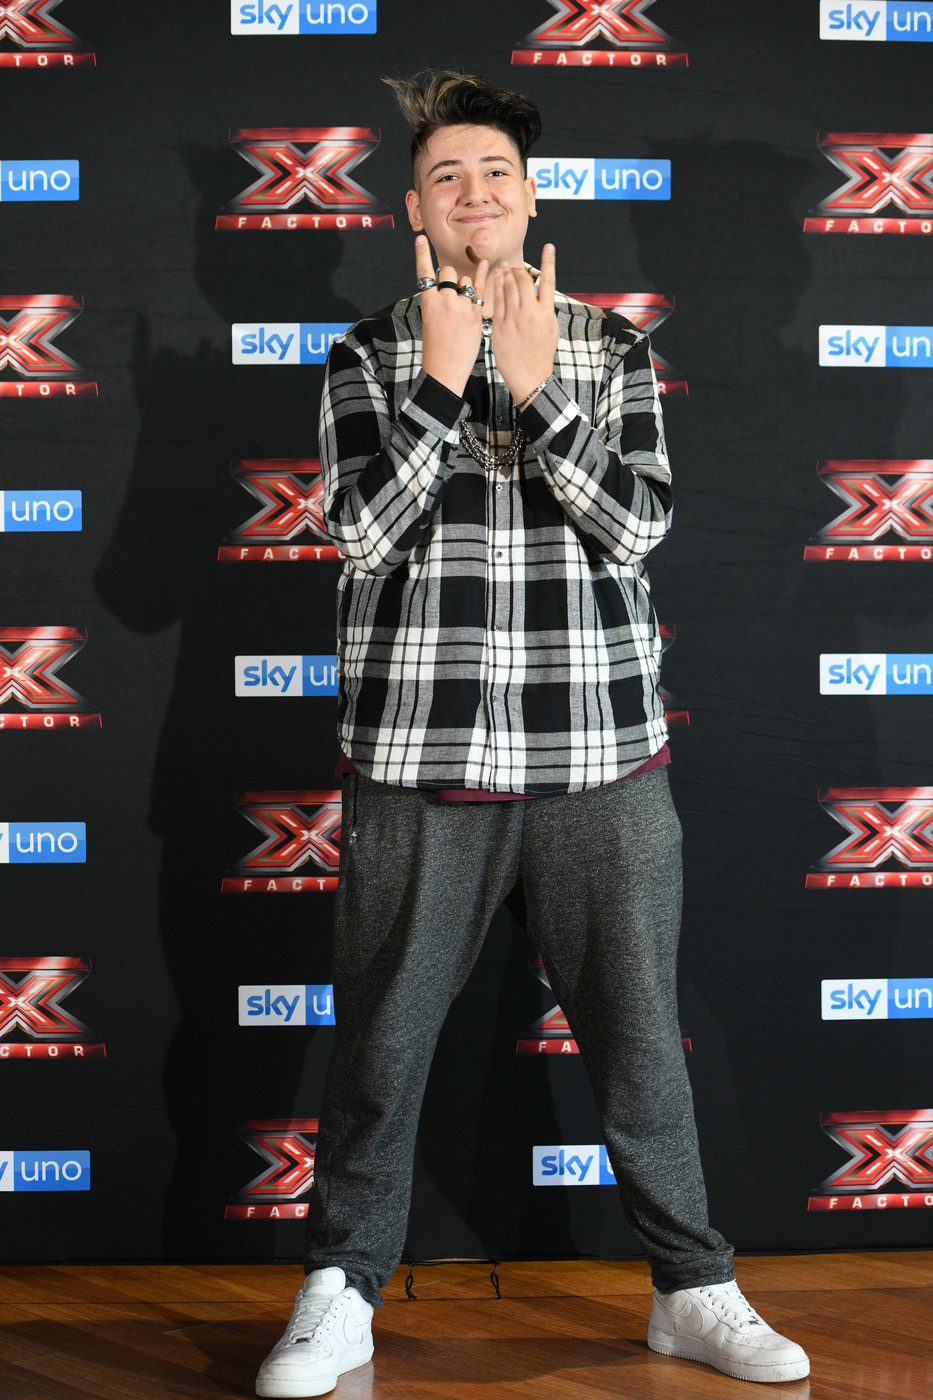 X Factor, fuori Emanuele. Fedez canta per il figlio e bacia Chiara